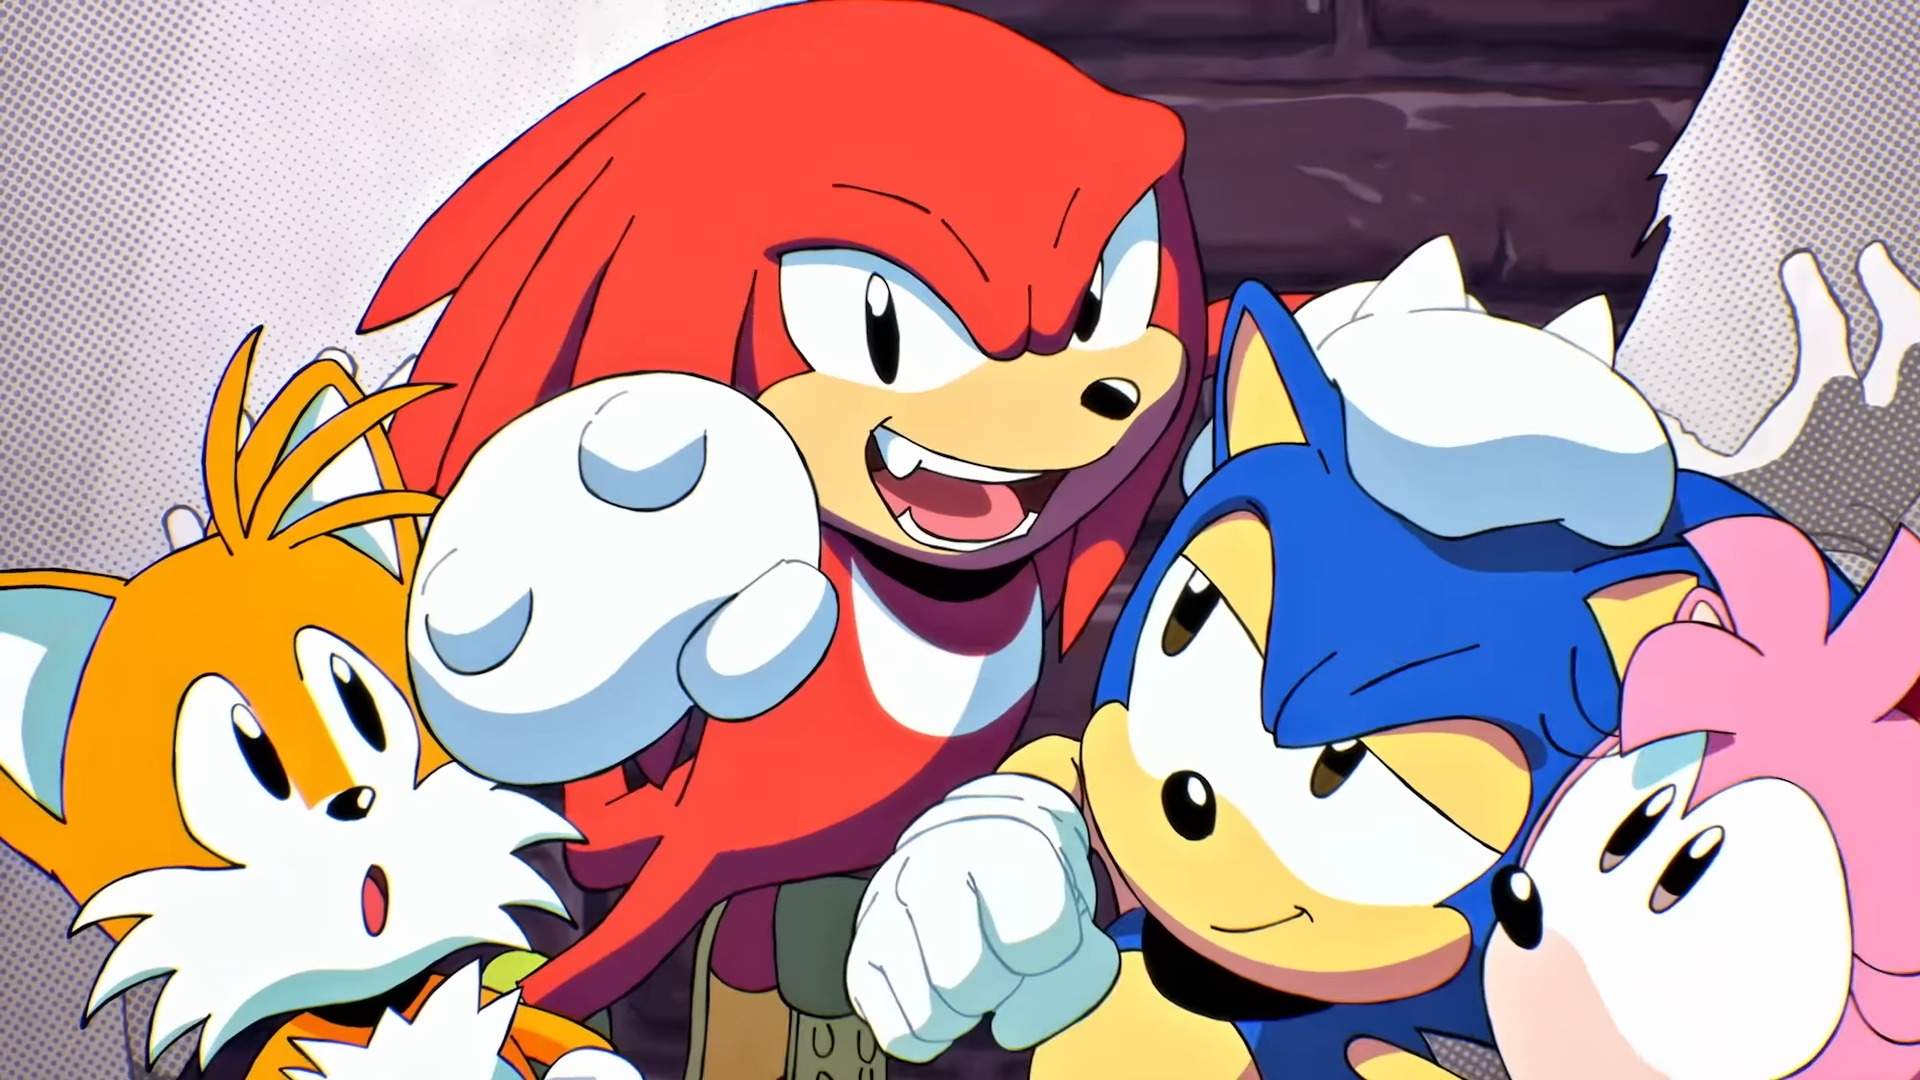 Sonic 2 chega 1º junho nas plataformas digitais